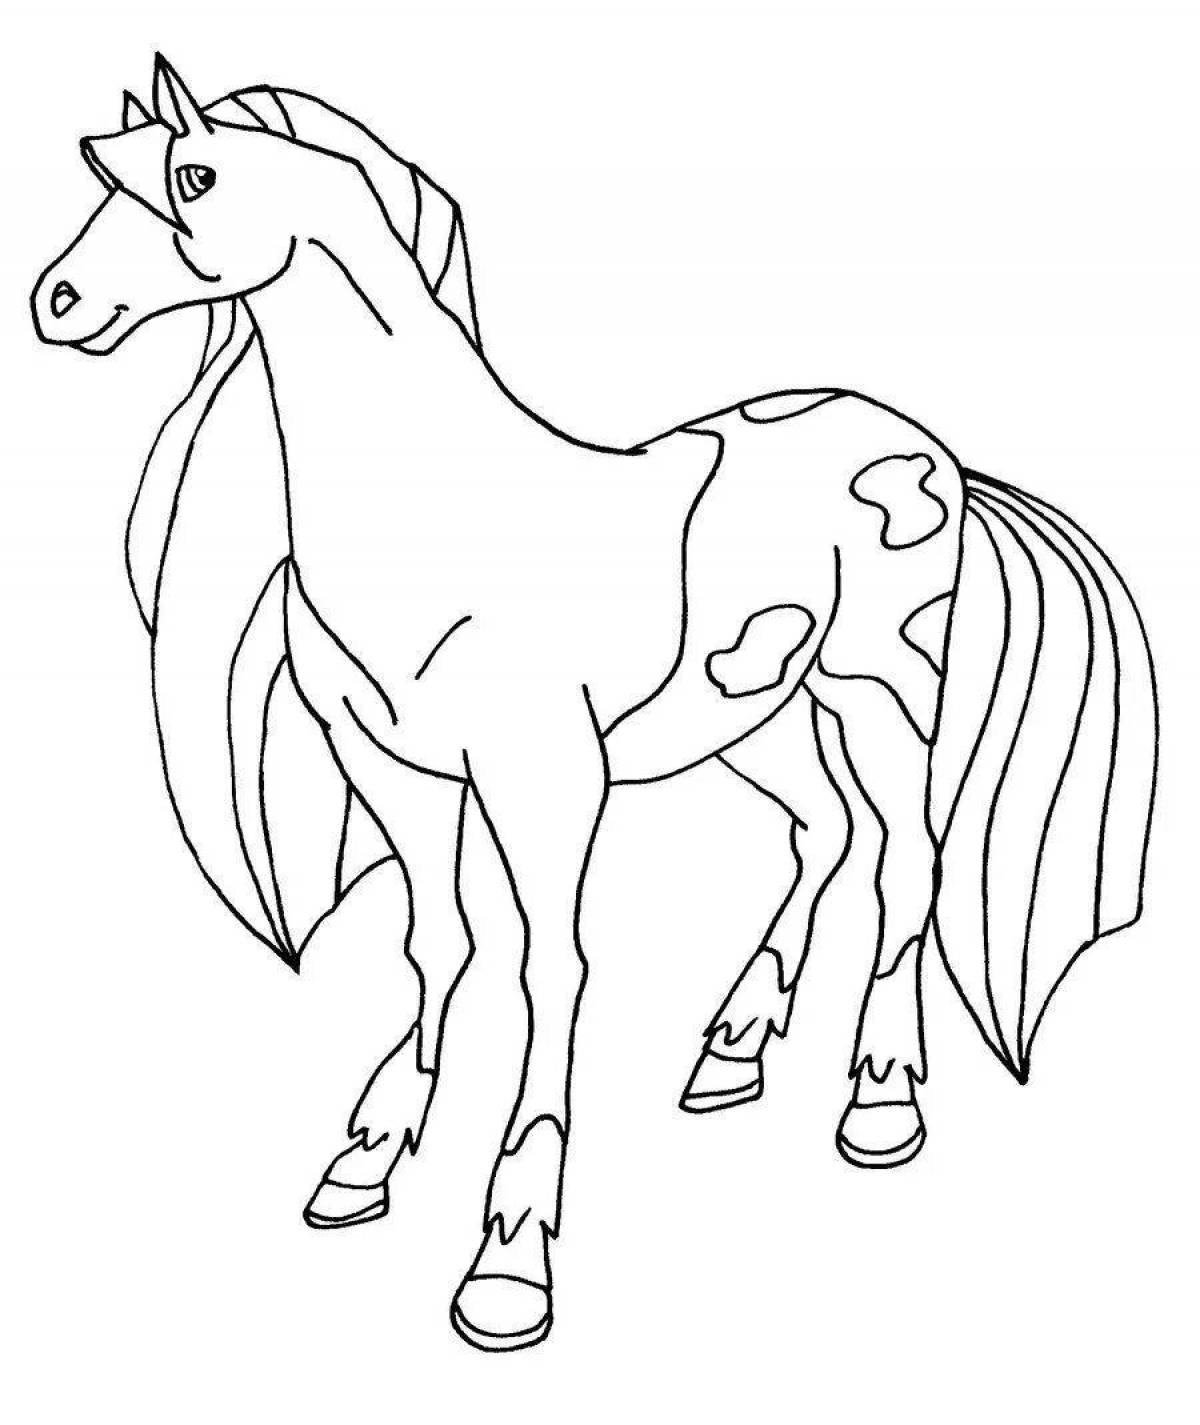 Раскрашиваем лошадку. Раскраска. Лошади. Раскраска конь. Картинки для раскрашивания лошади. Лошадка раскраска для детей.